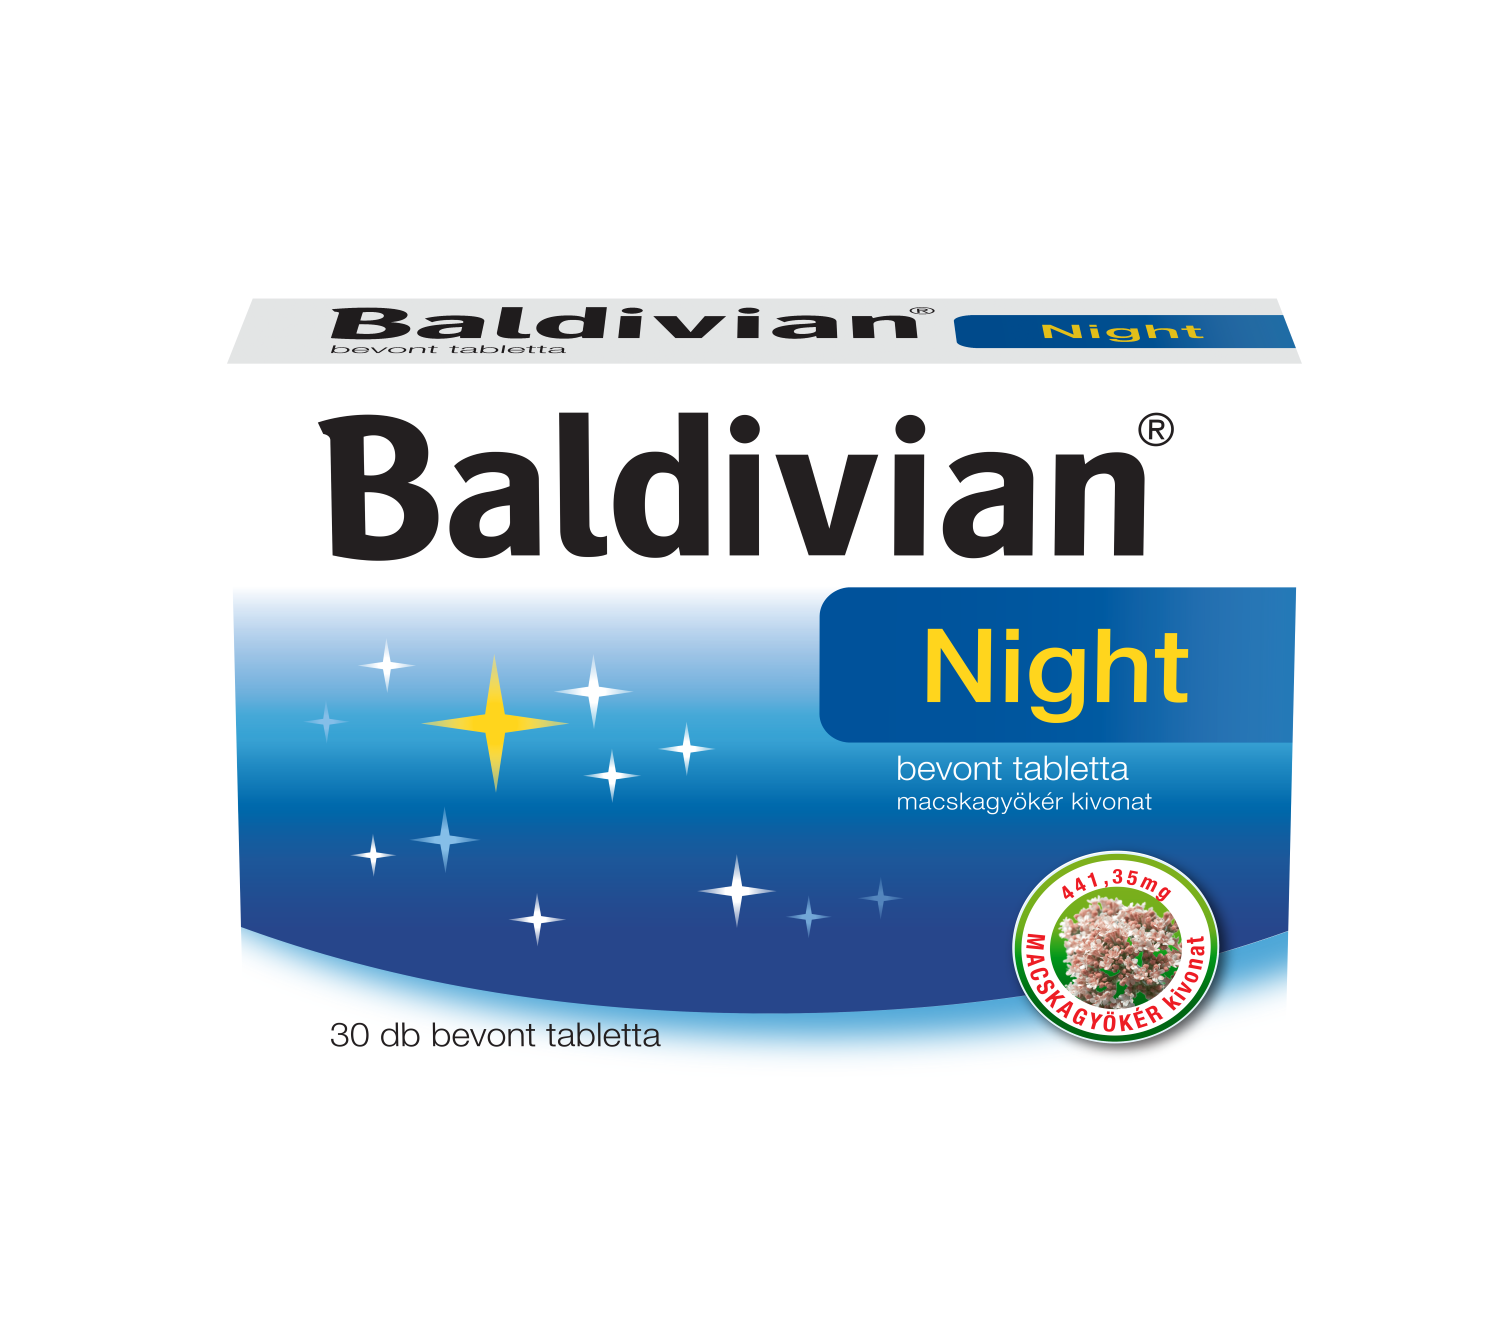 Baldivian Night bevont tabletta